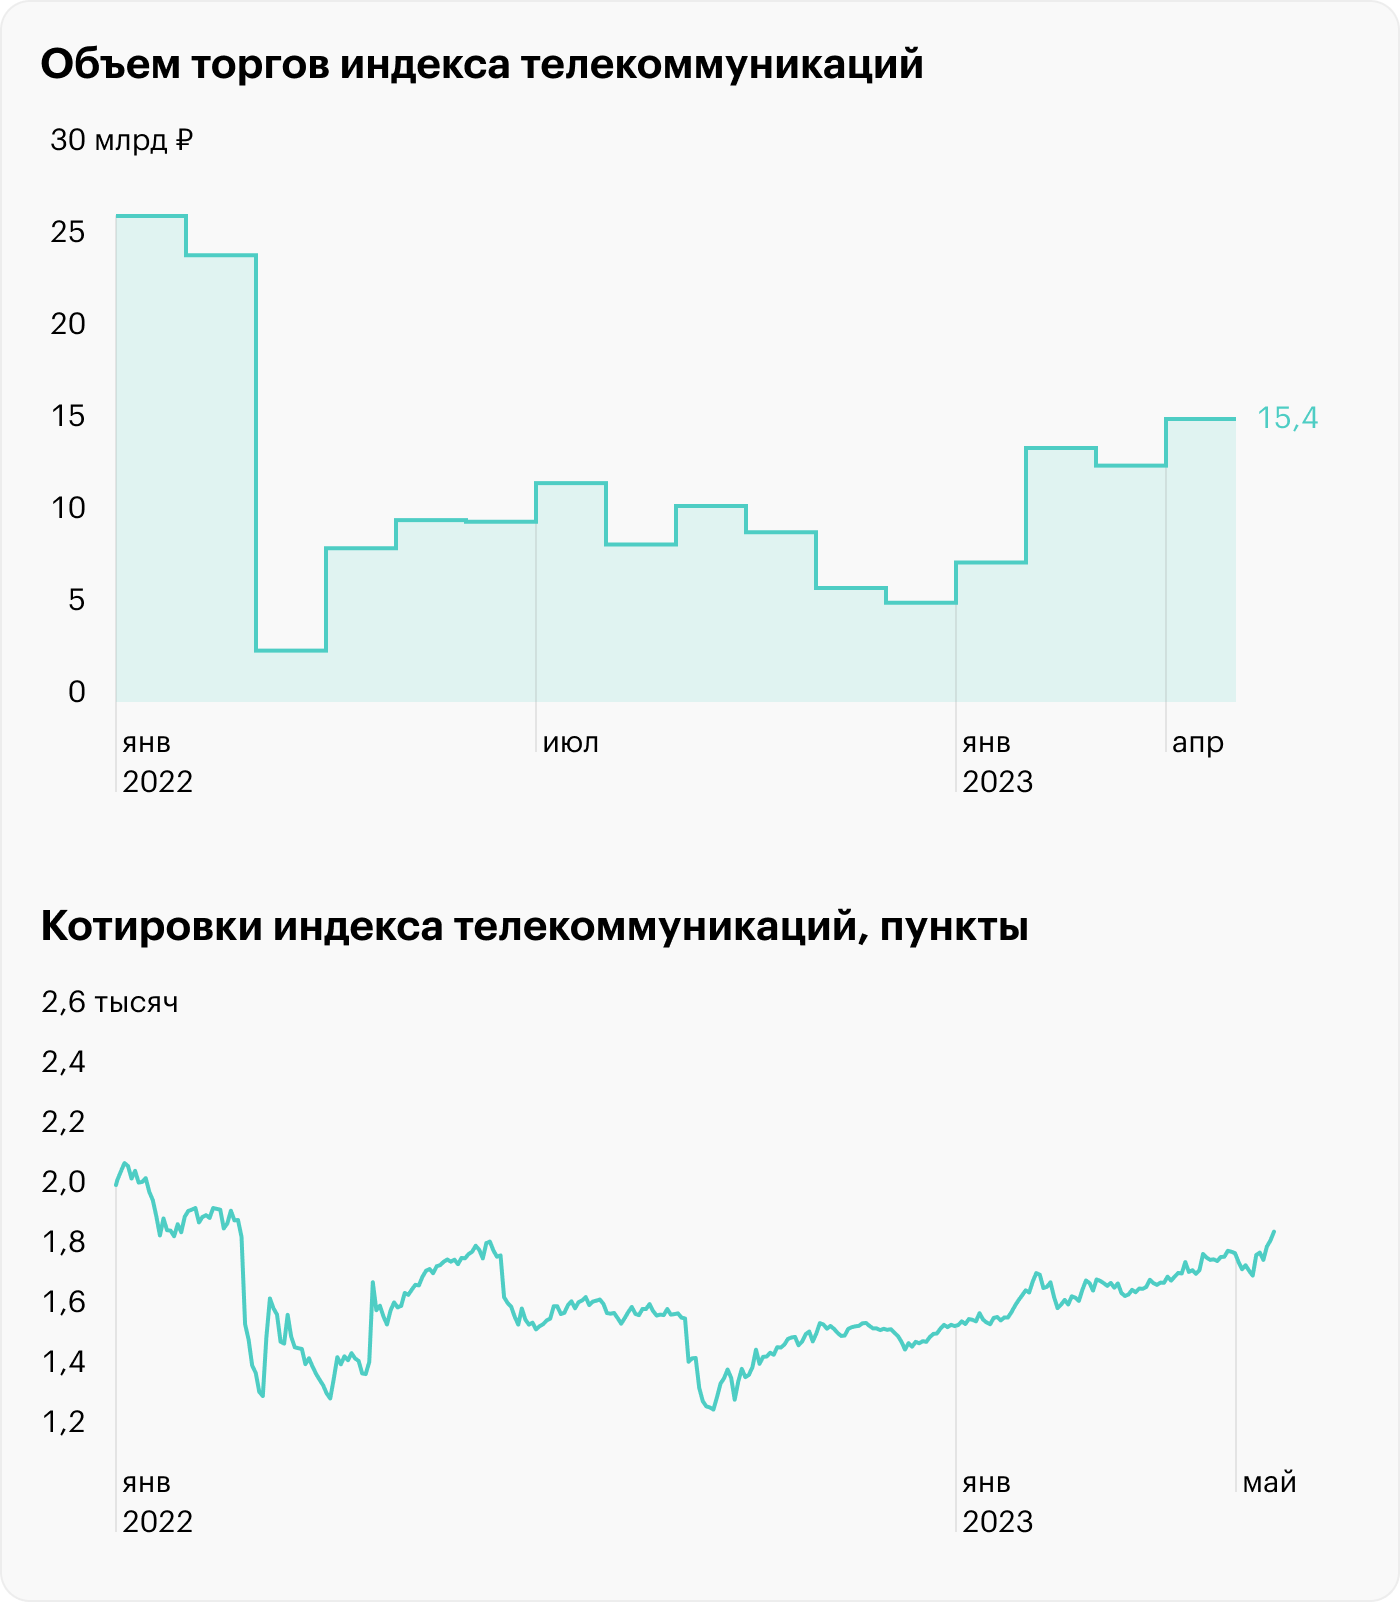 Источник: данные Московской биржи